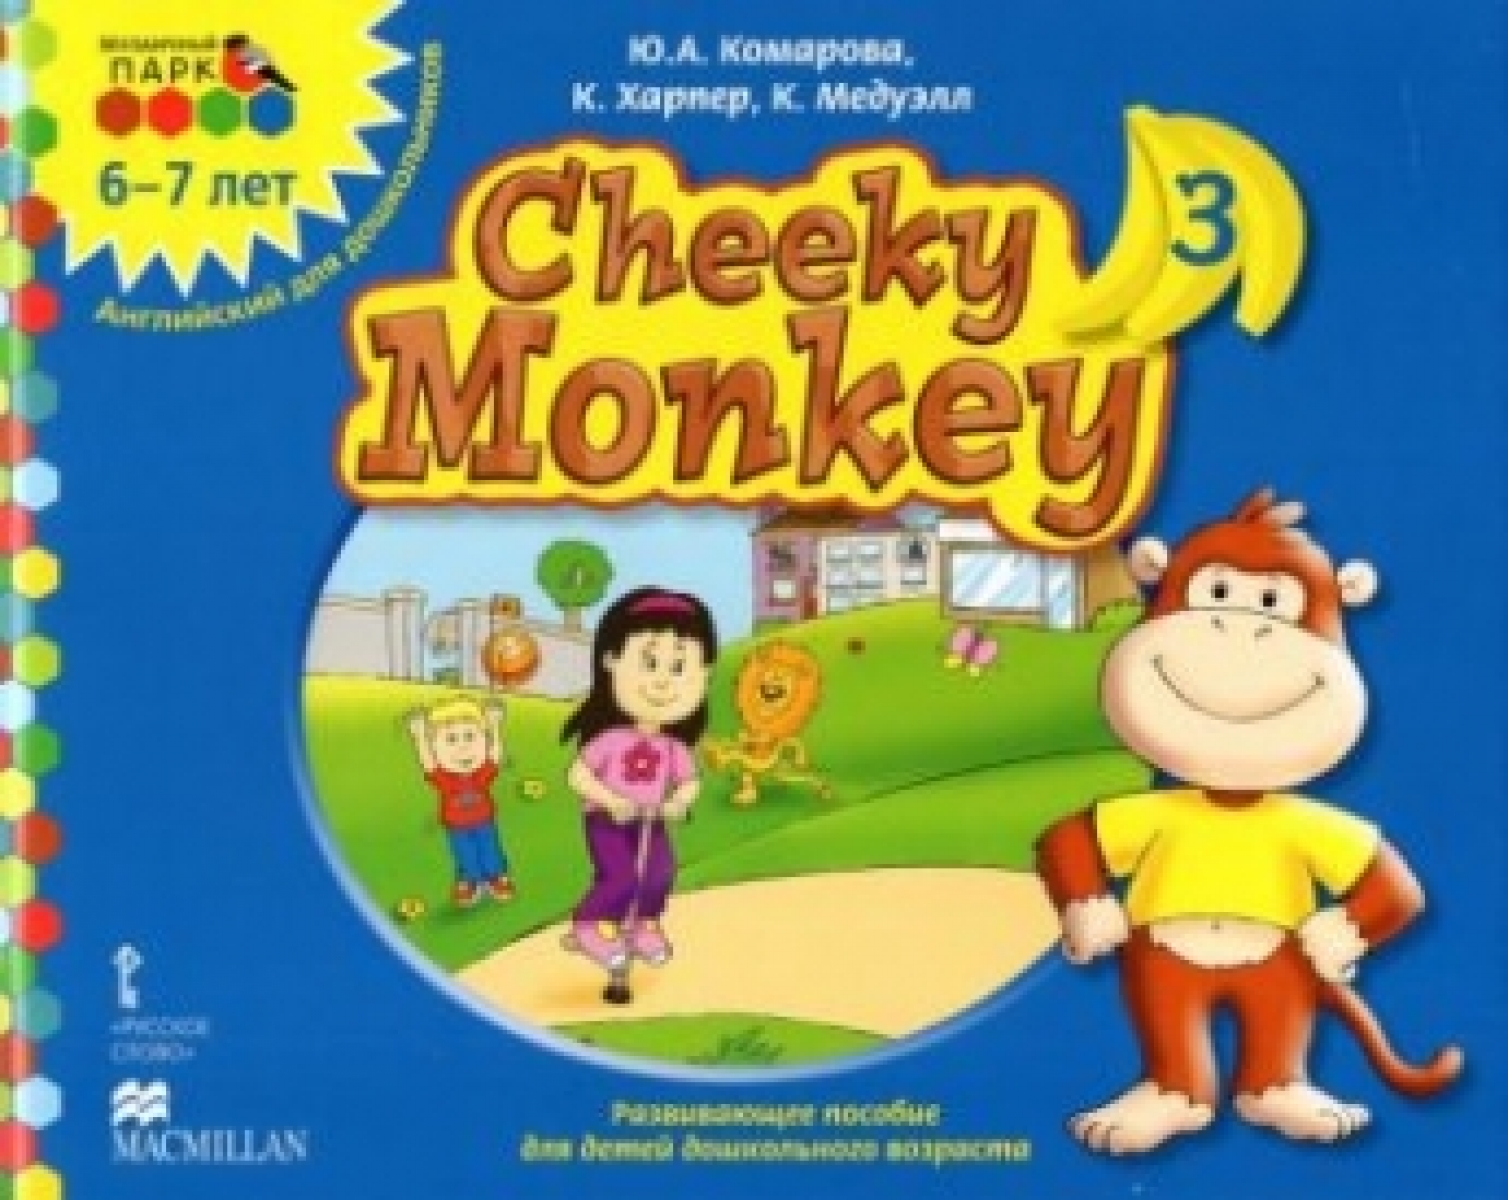    Cheeky Monkey 3.    .  . 6-7 .   